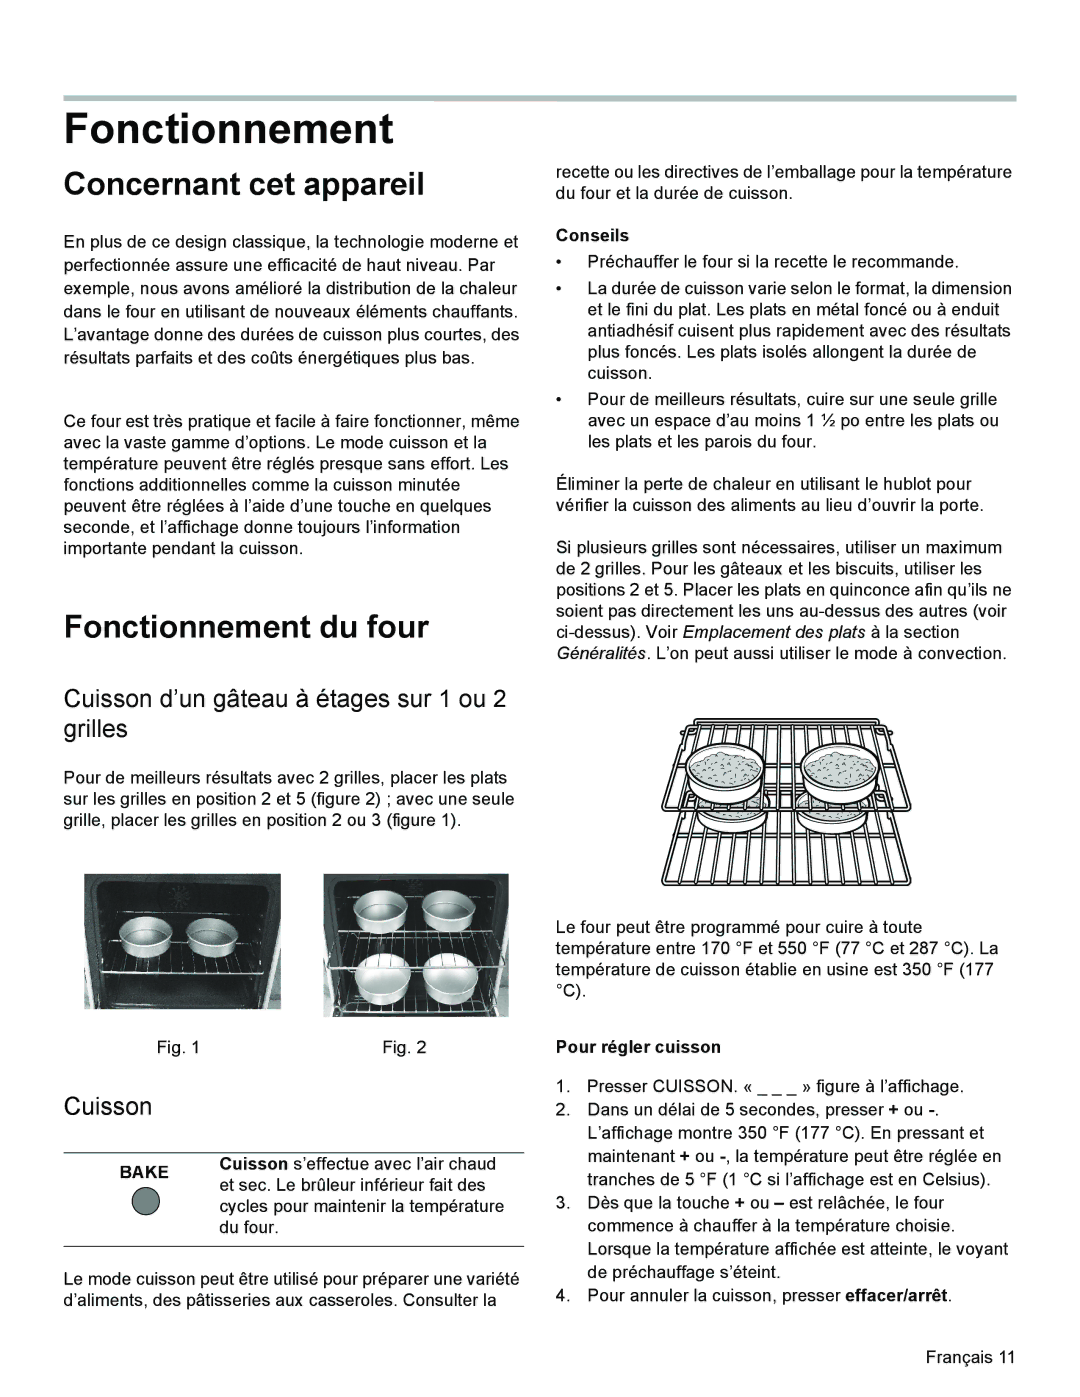 Bosch Appliances HES3023U manual Concernant cet appareil, Fonctionnement du four, Cuisson 